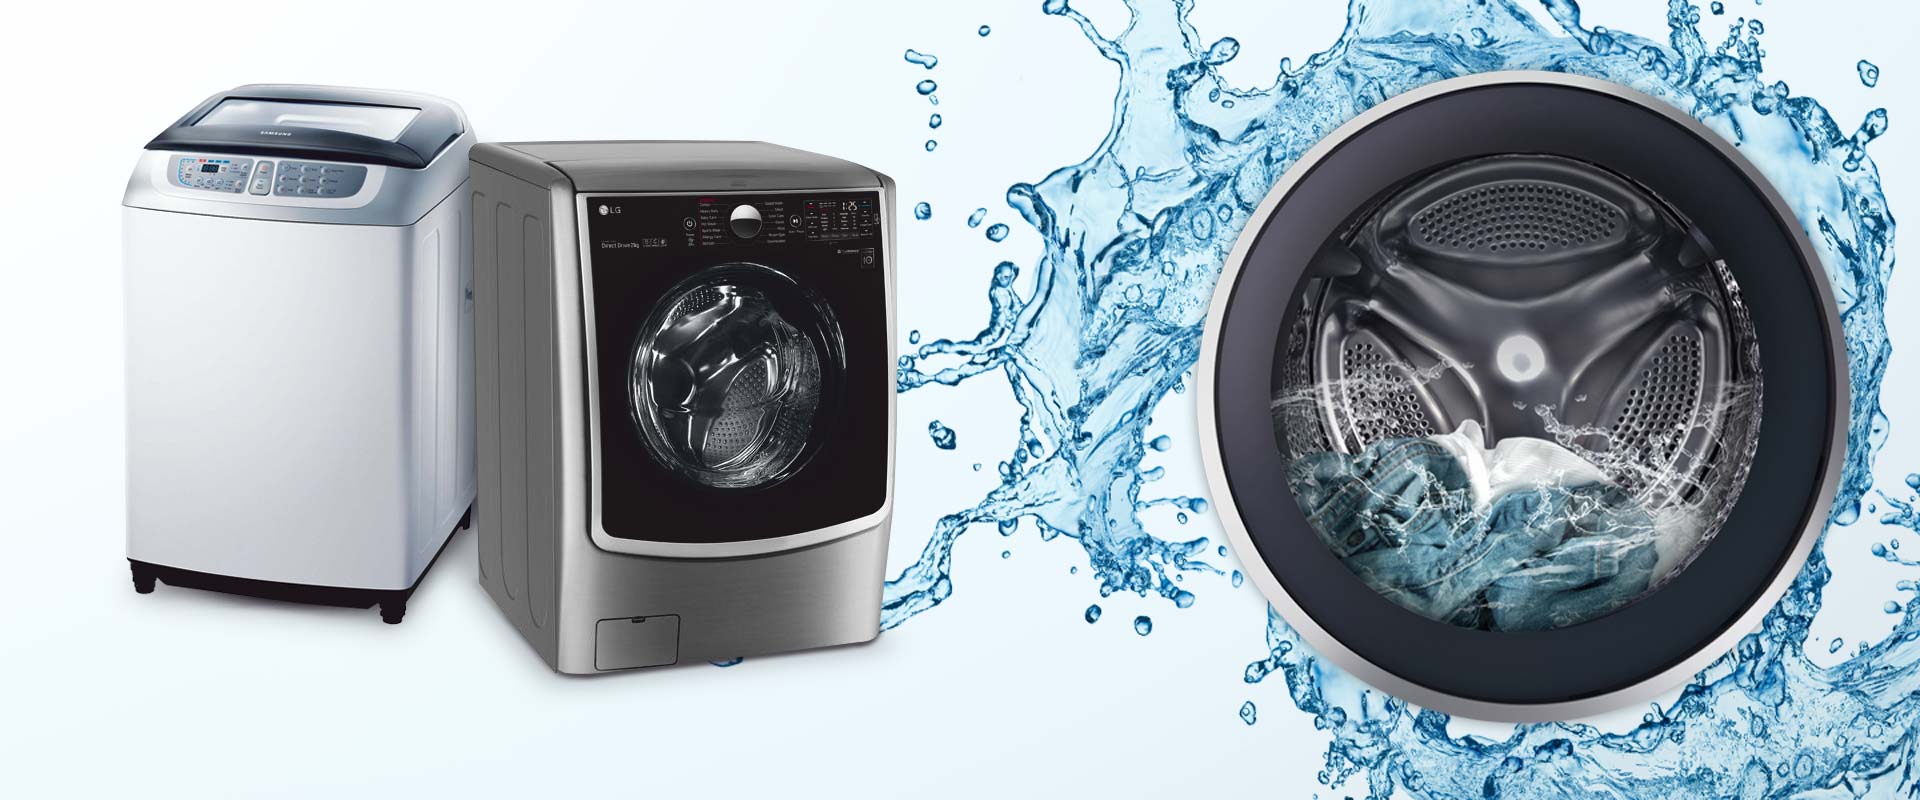 گرم نبودن آب در ماشین لباسشویی